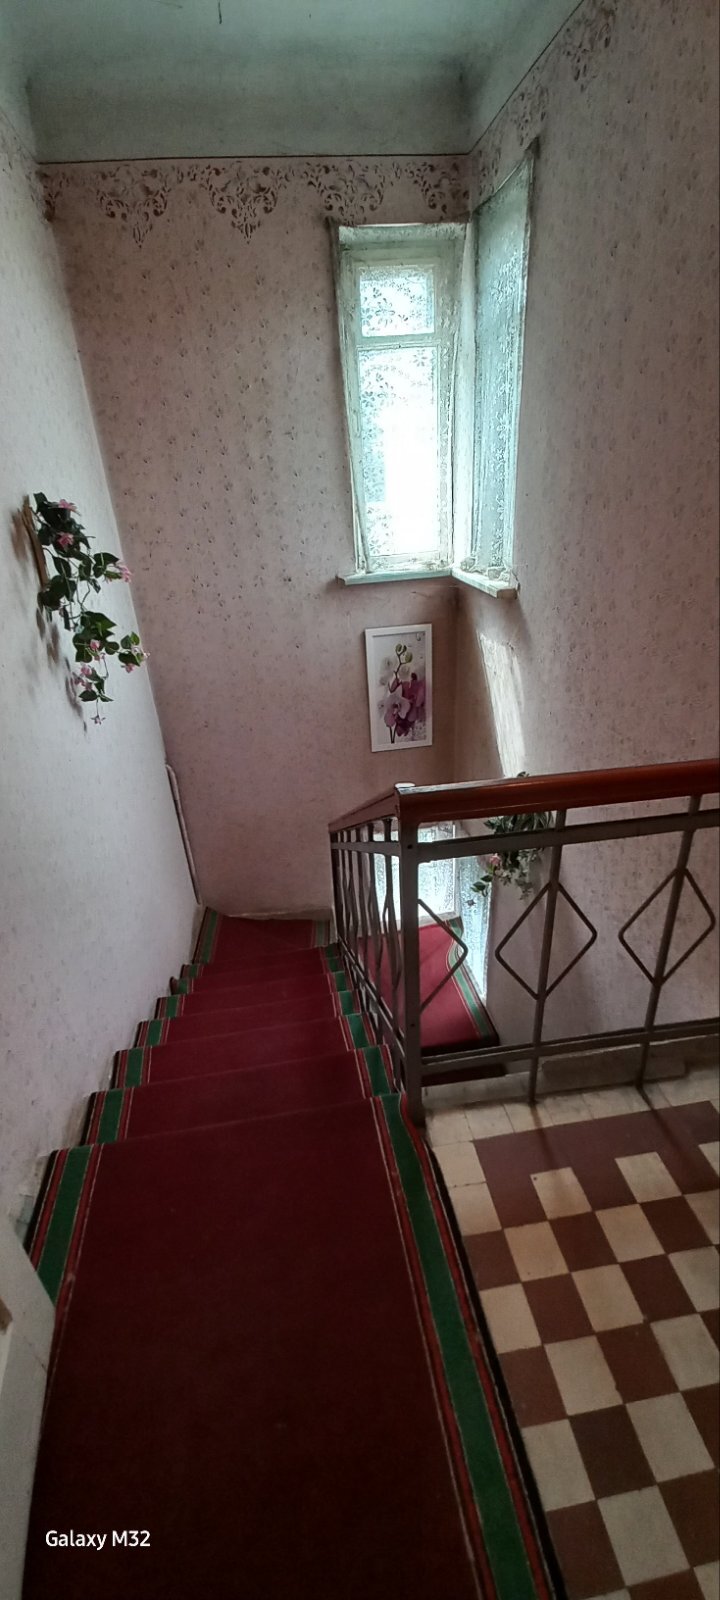 Продажа дома 141.4 м², Старицкого пер., Кічкарівка, м.Луцьк